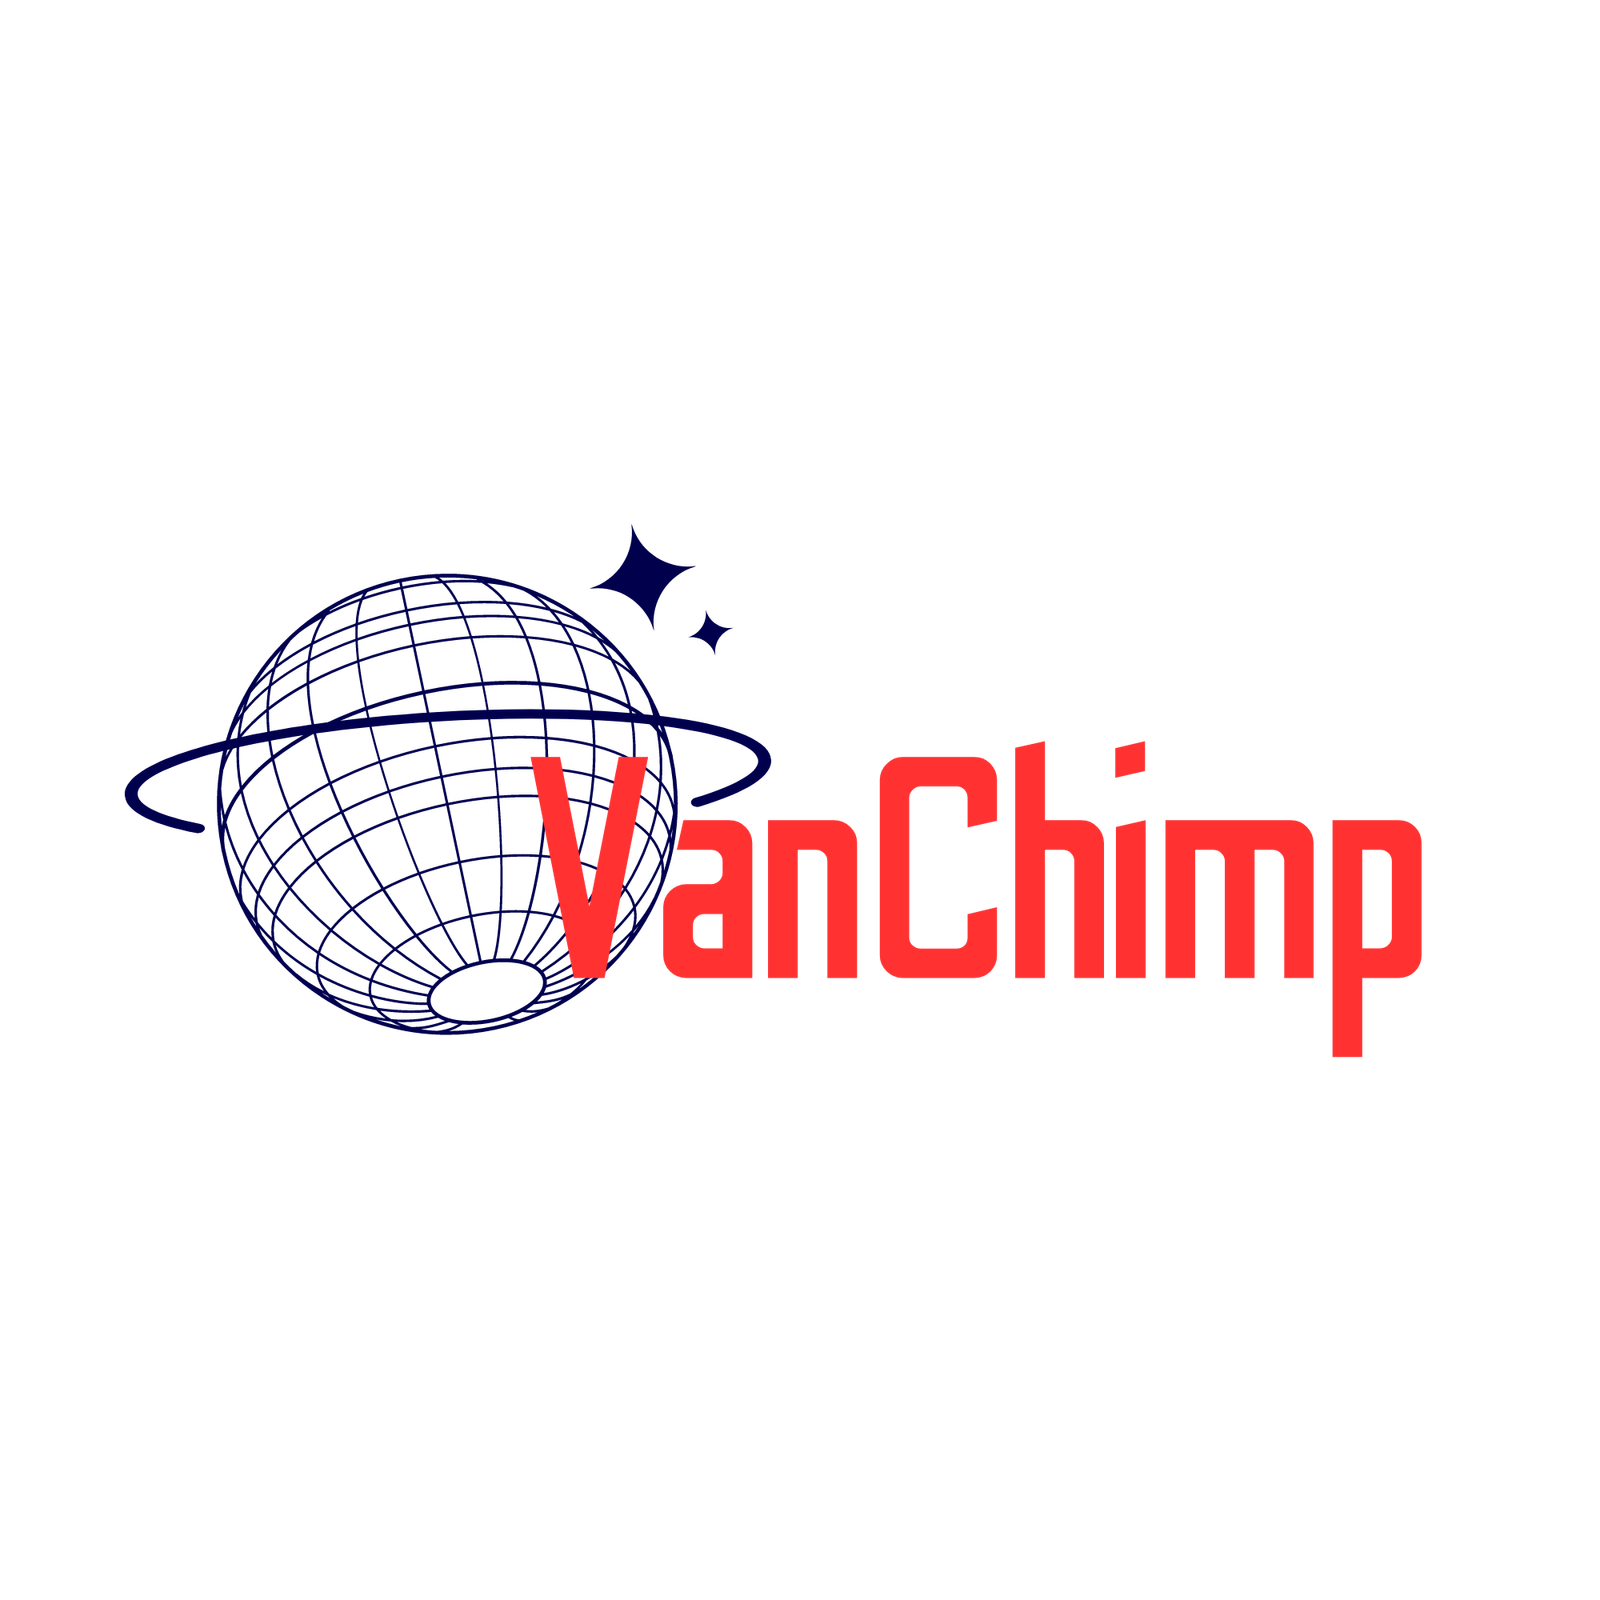 Van Chimp